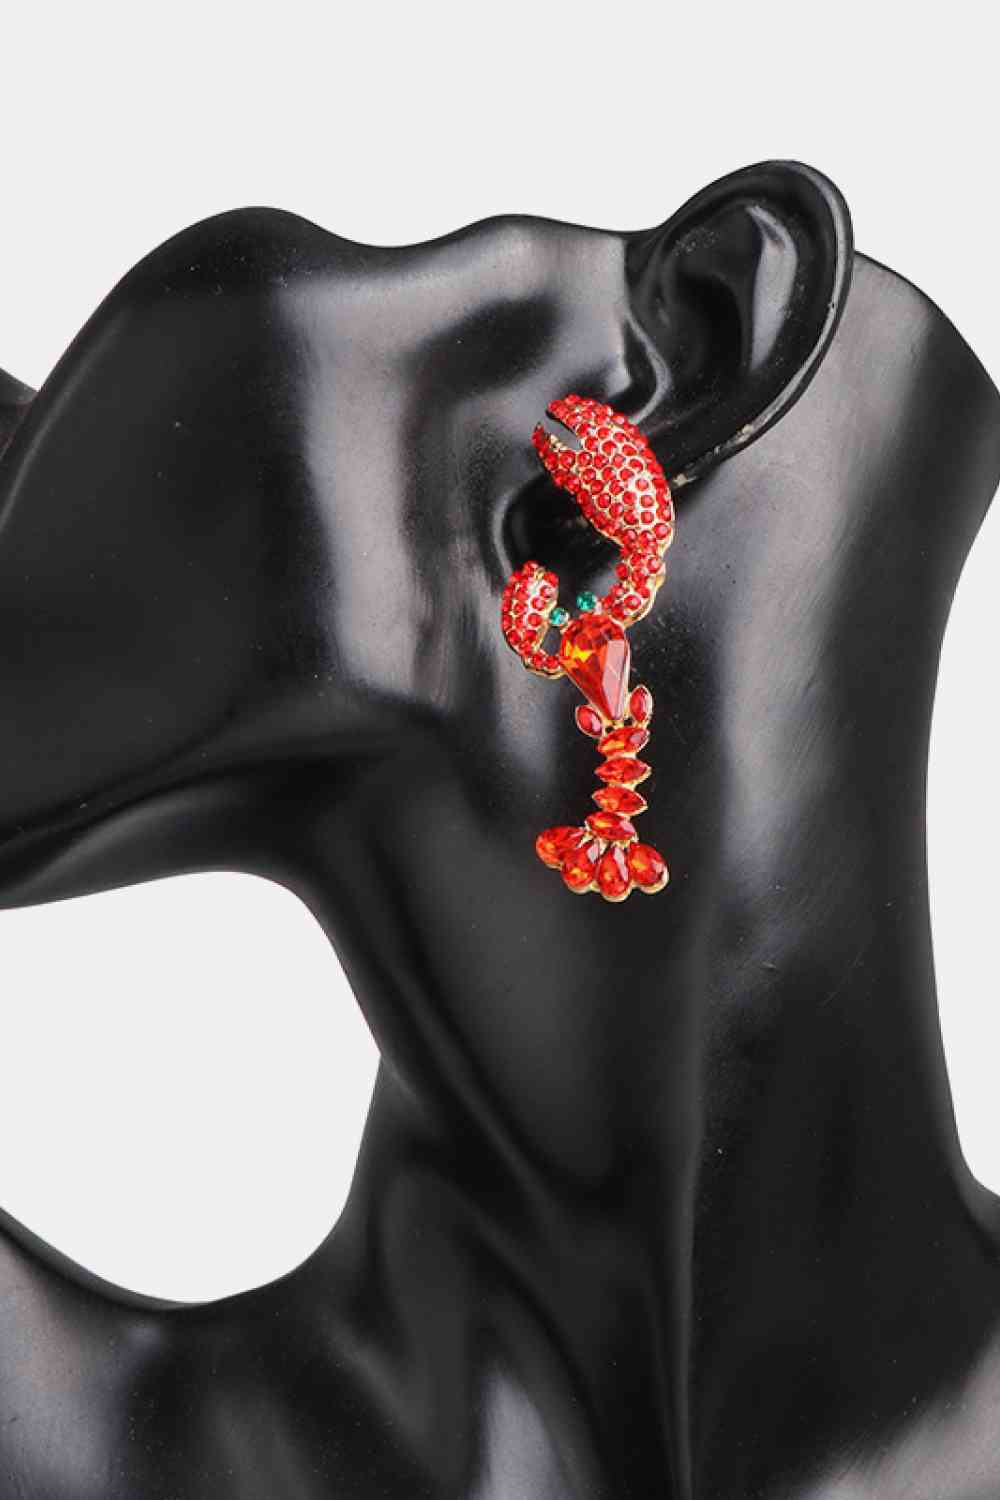 Lobster Shape Glass Stone Dangle Earrings